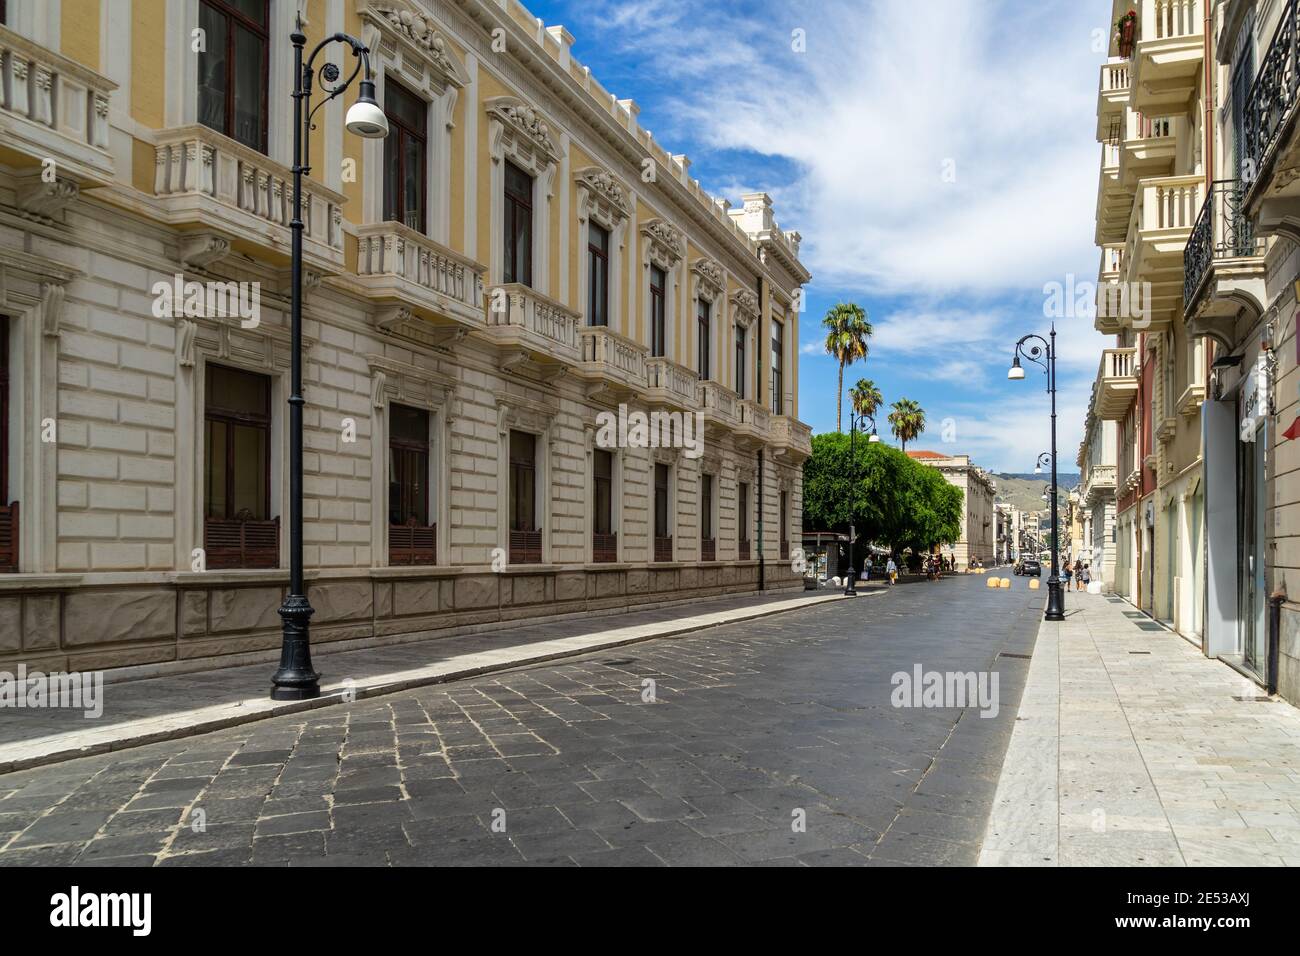 Main pedestrian and shopping street (Corso Garibaldi) in Reggio Calabria city centre, Italy Stock Photo